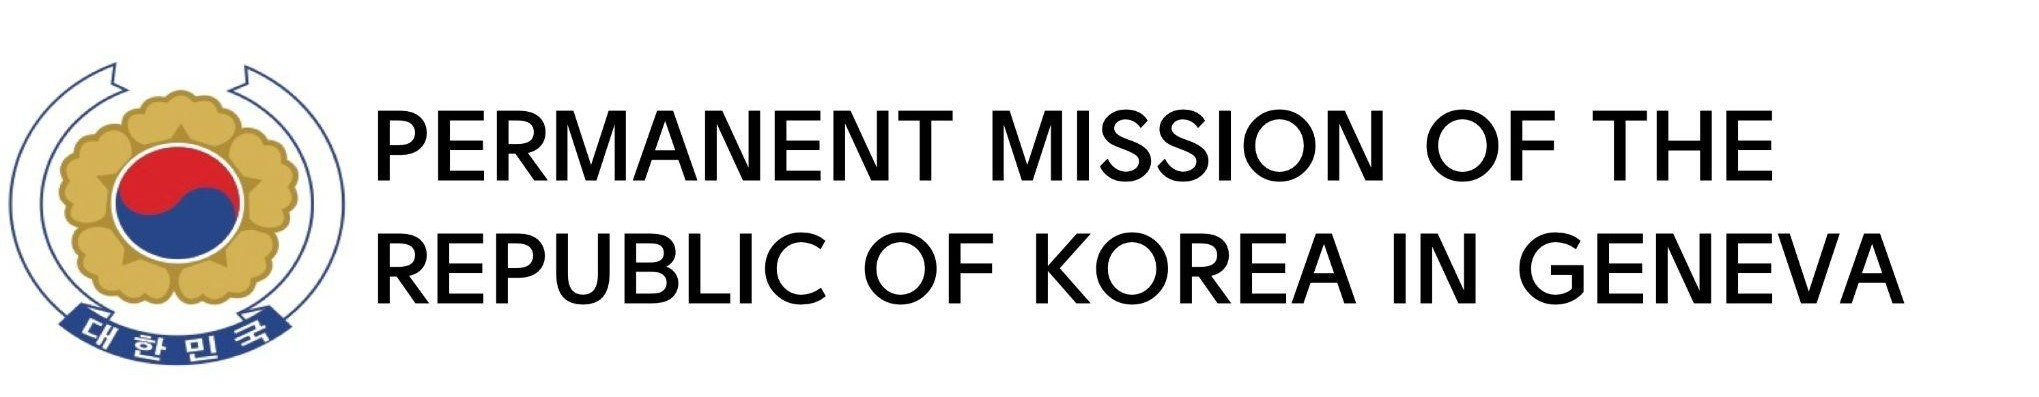 Permanent_Mission_Republic_of_Korea_in_Geneva_Logo